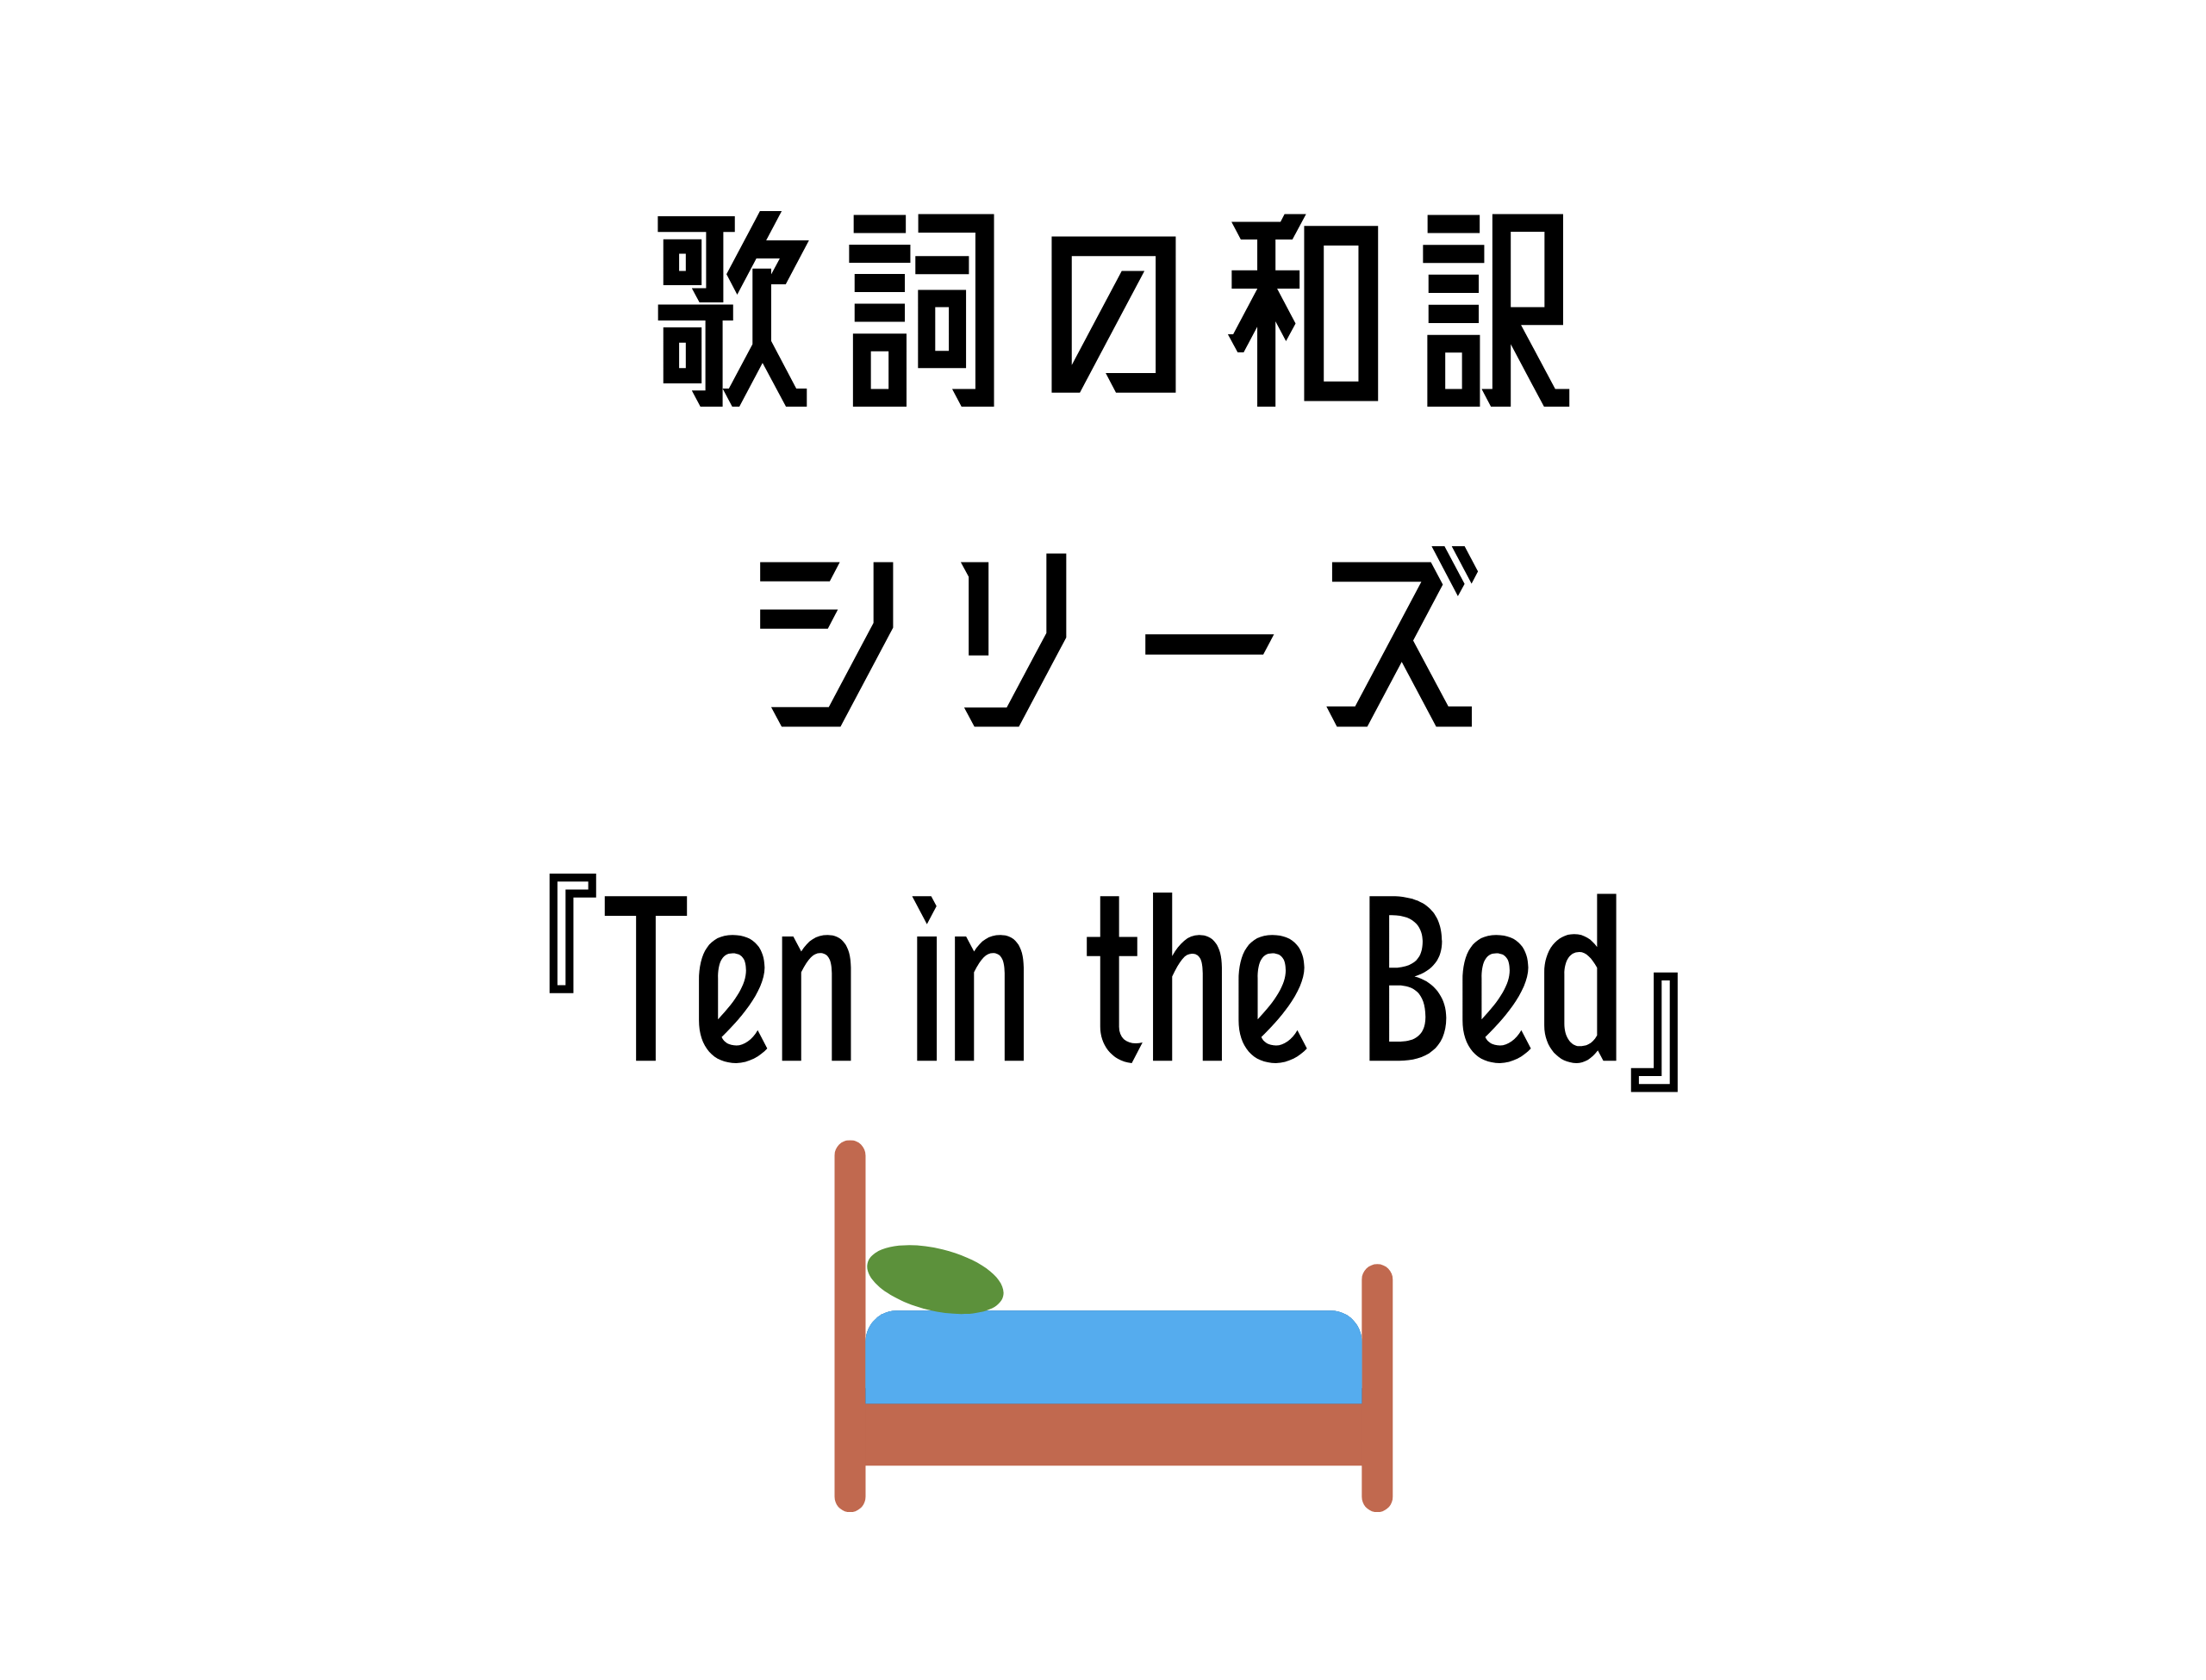 『Ten in the Bed』日本語と英語の歌詞はこちら